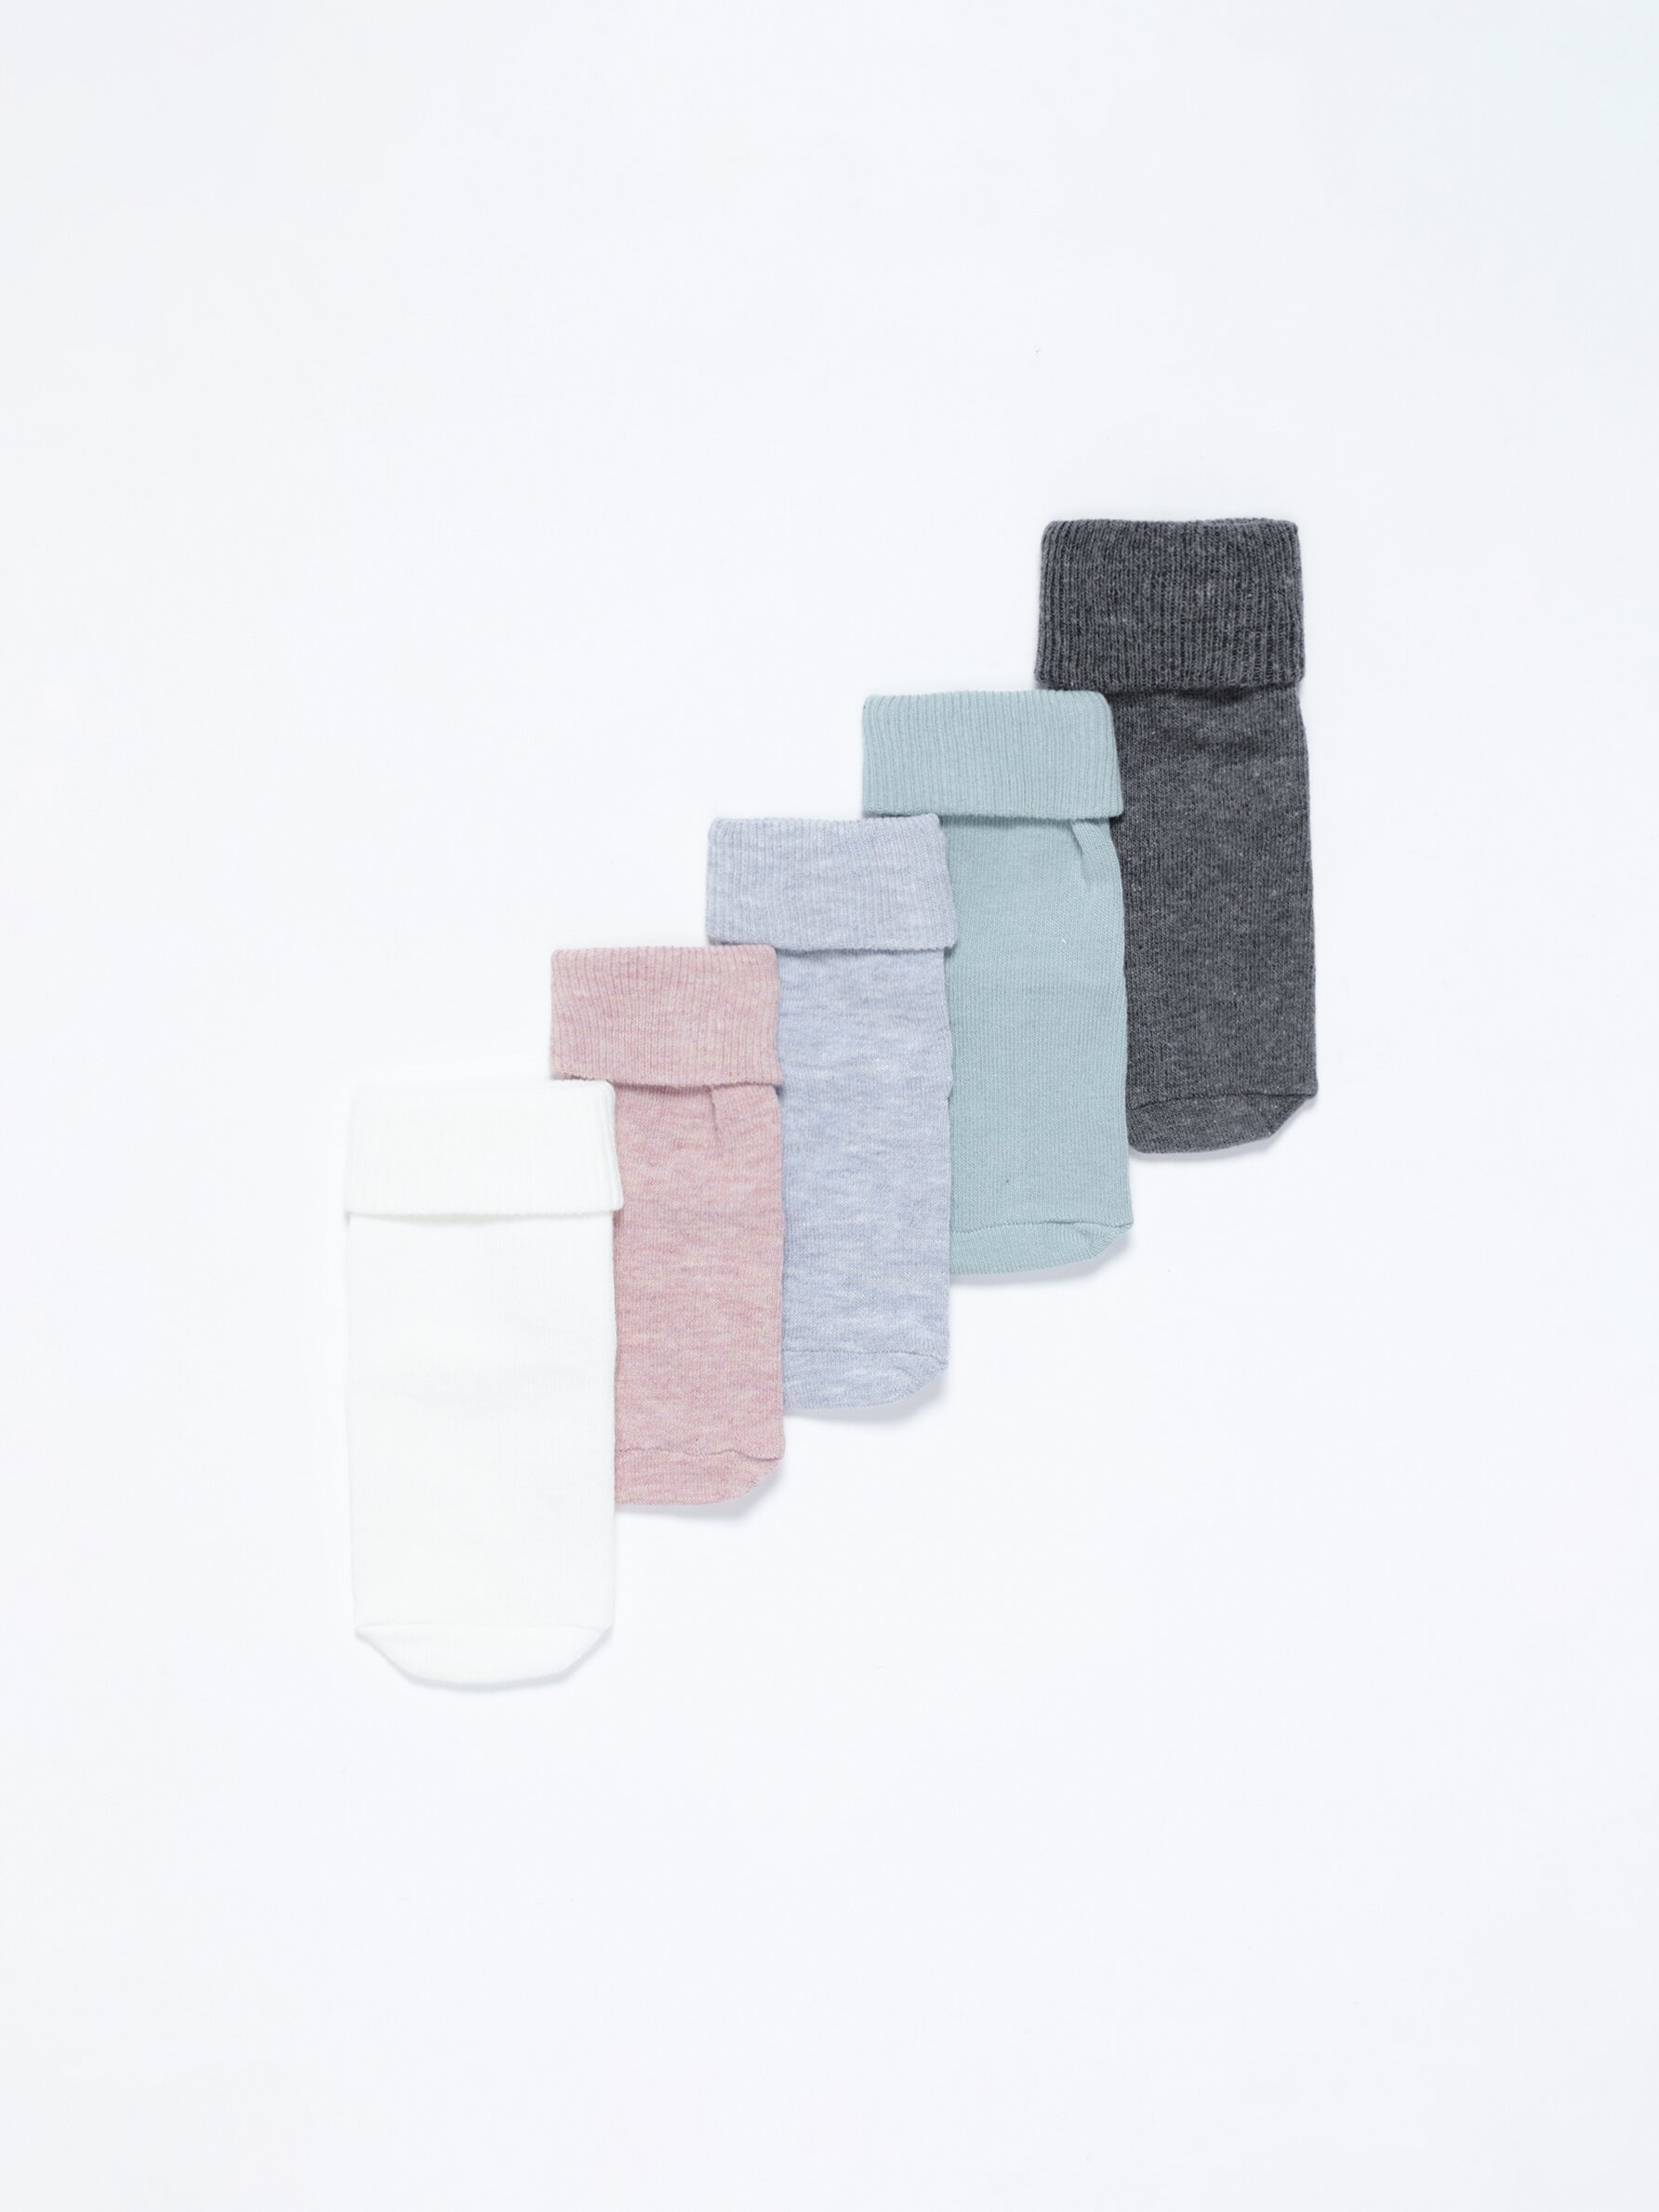 Pack de 3 calcetines antideslizantes para bebé Azul 6-12 meses